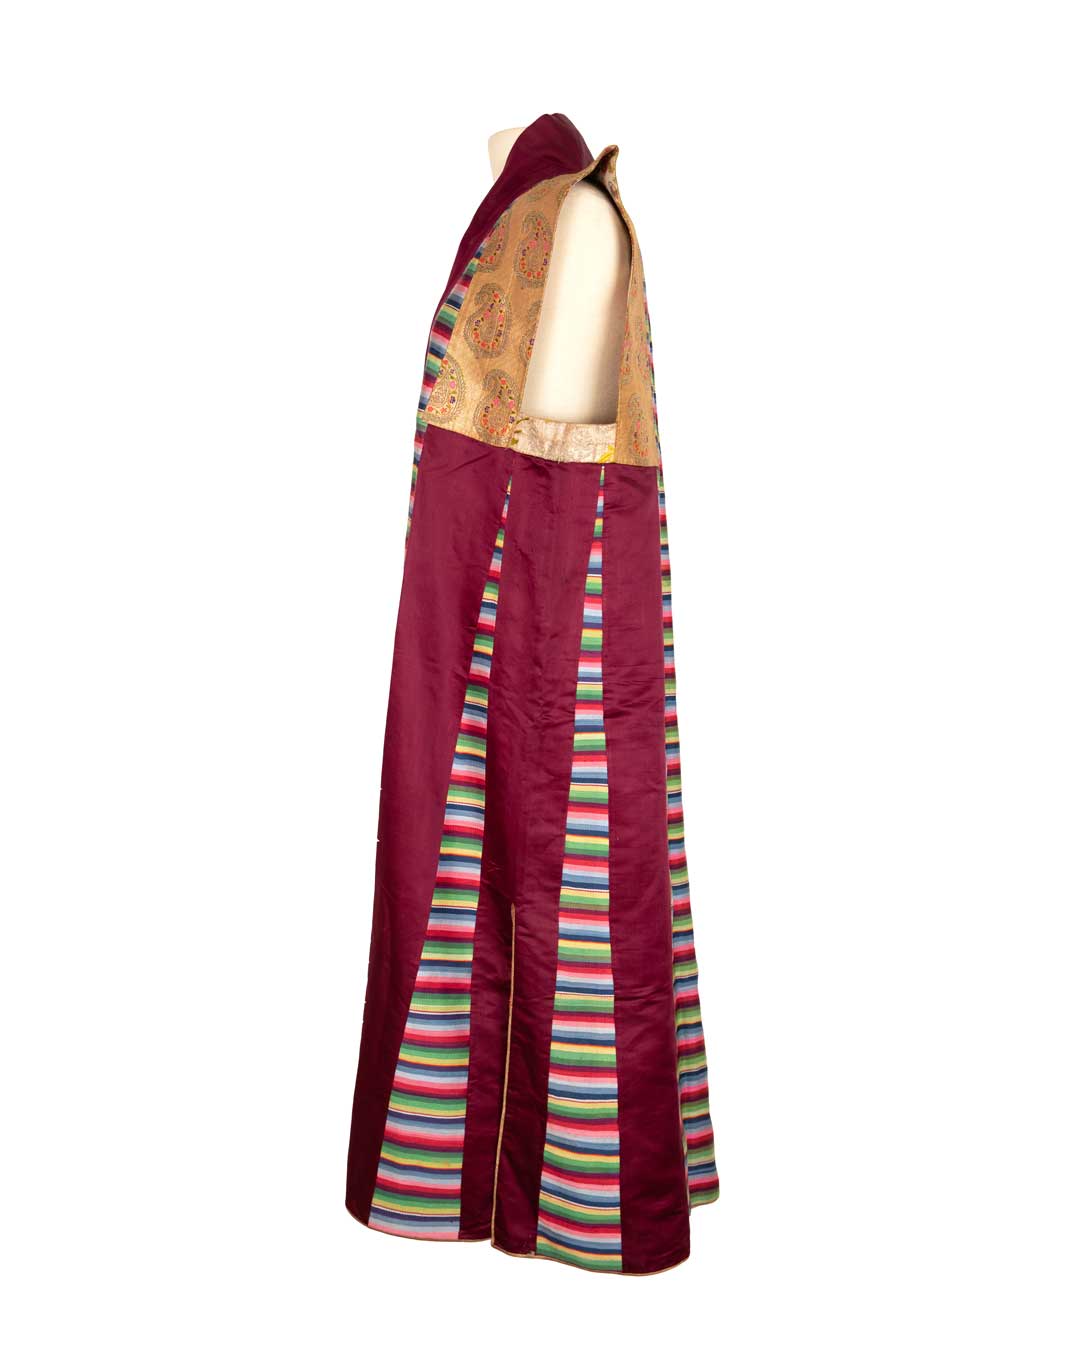 Tibetan Wedding Vest